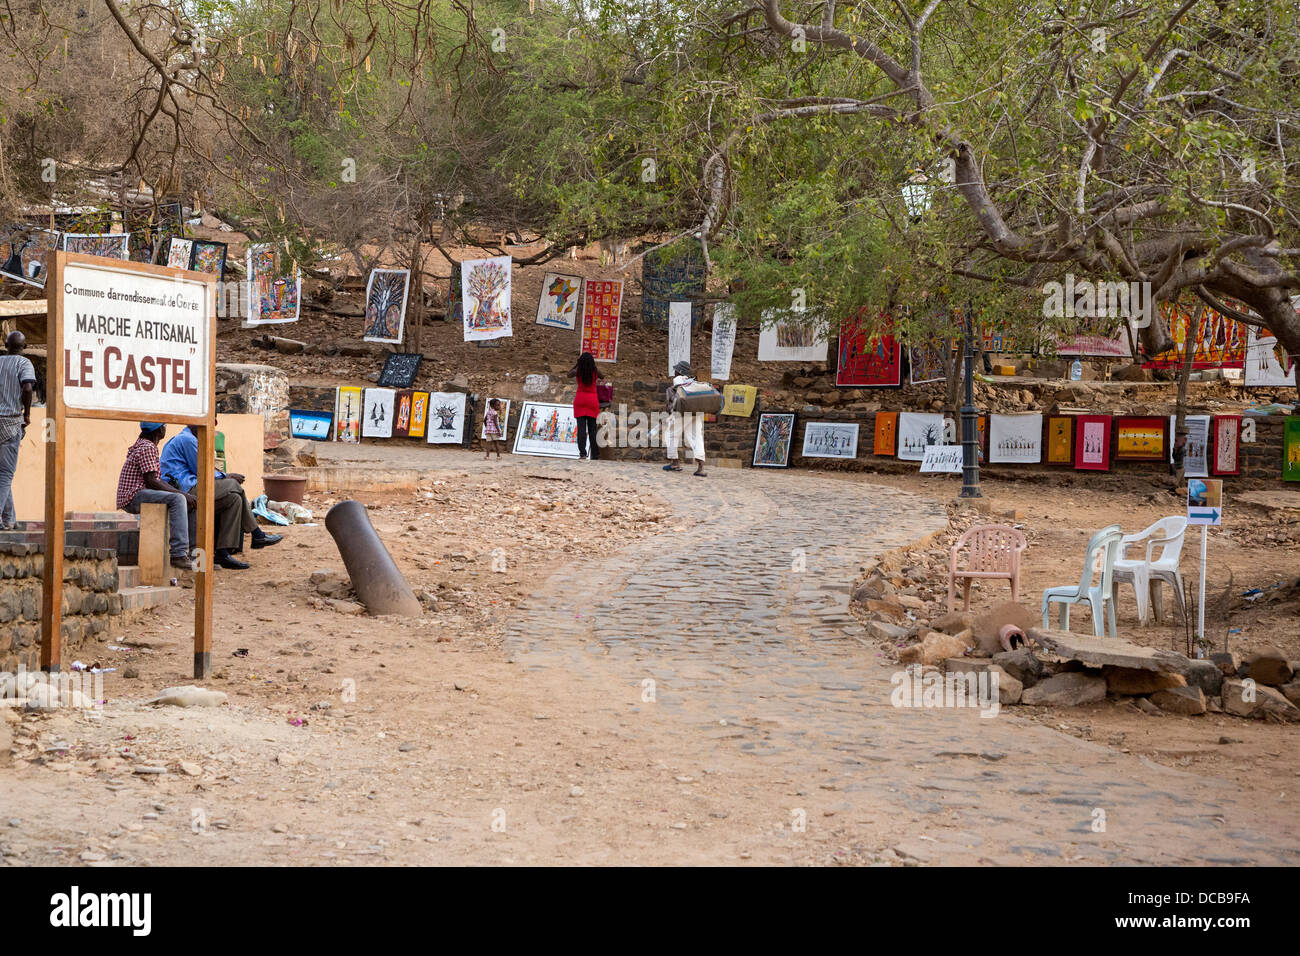 Les artistes exposent leurs travaux le long de la rue du Castel, menant à l'apogée de l'île. L'île de Gorée, au Sénégal. Banque D'Images